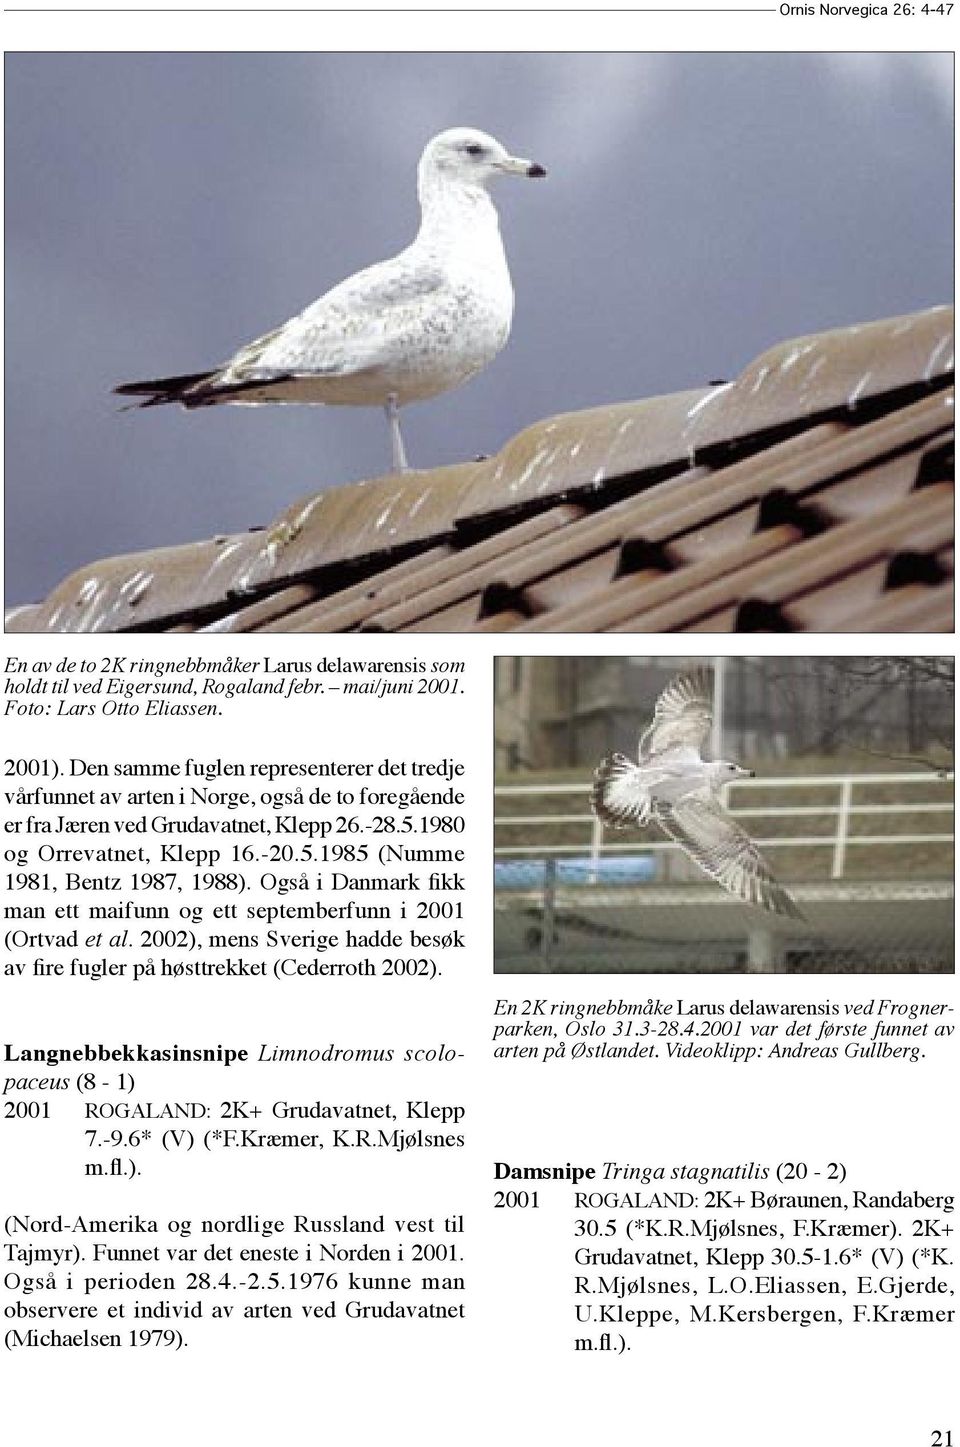 Også i Danmark fikk man ett maifunn og ett septemberfunn i 2001 (Ortvad et al. 2002), mens Sverige hadde besøk av fire fugler på høsttrekket (Cederroth 2002).